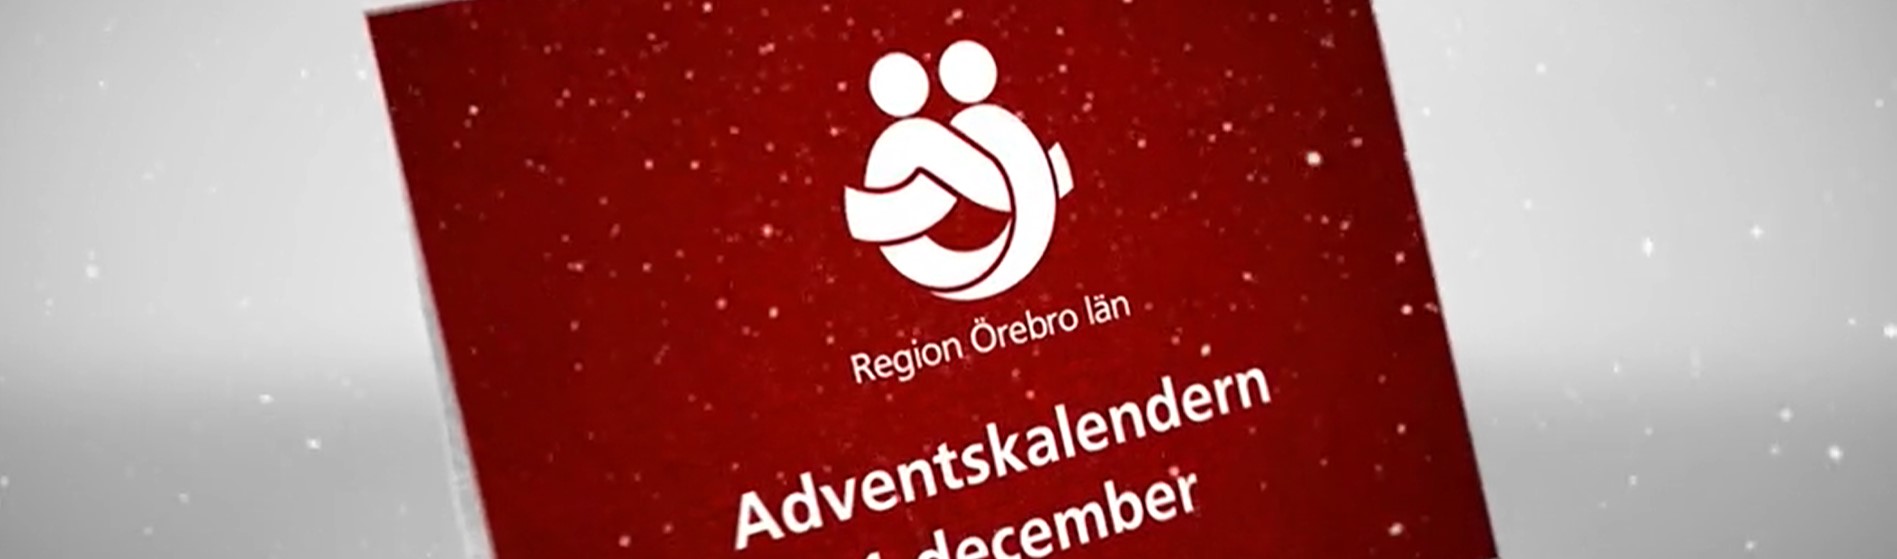 Snö singlar ner på ett rött kort med texten Region Örebro län adventskalender